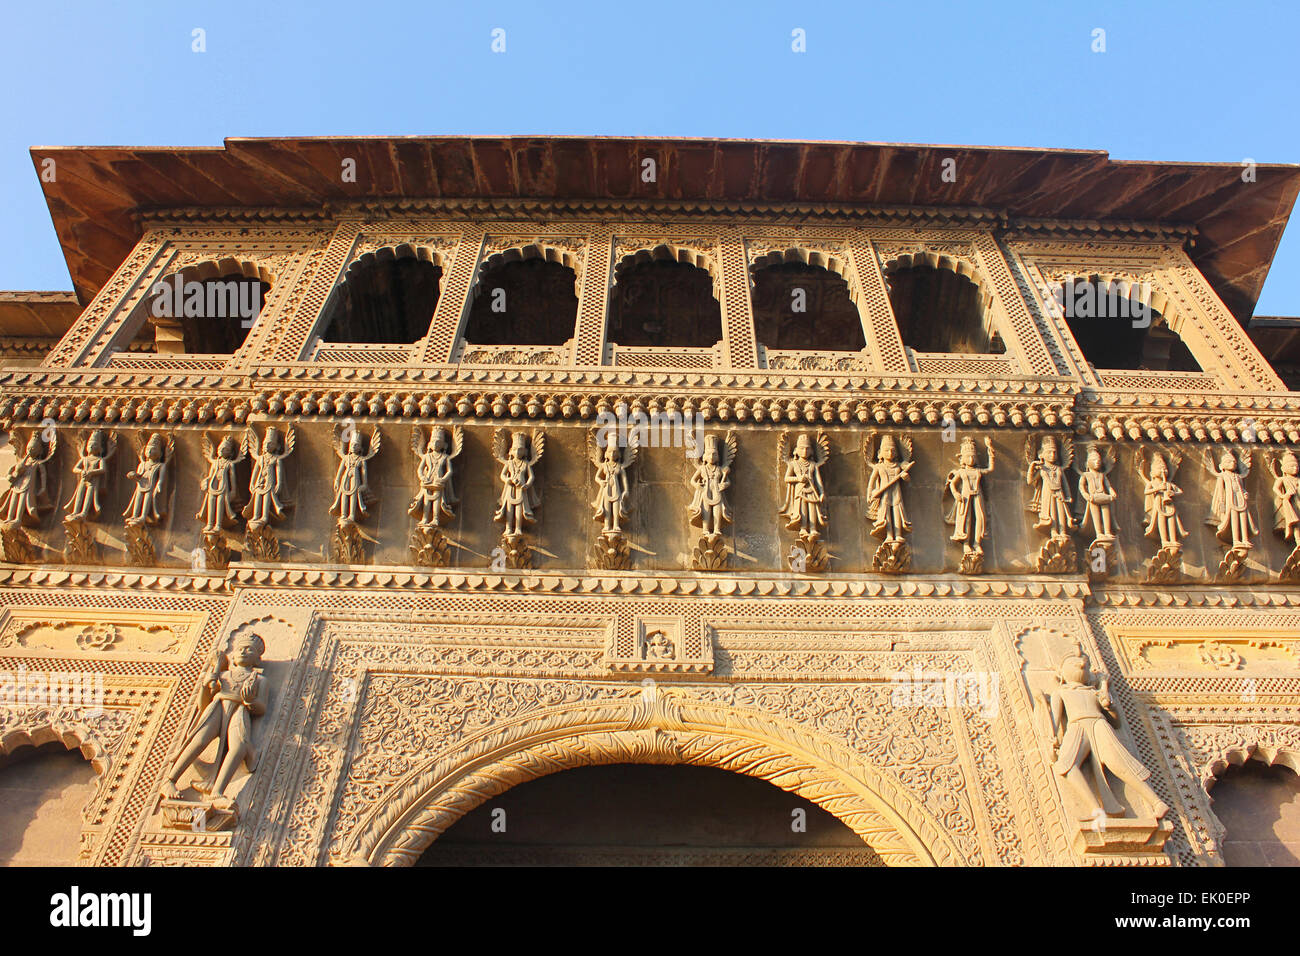 Facade, Ahilya fort, Maheswar, Khargone, Madhya Pradesh, India Stock Photo